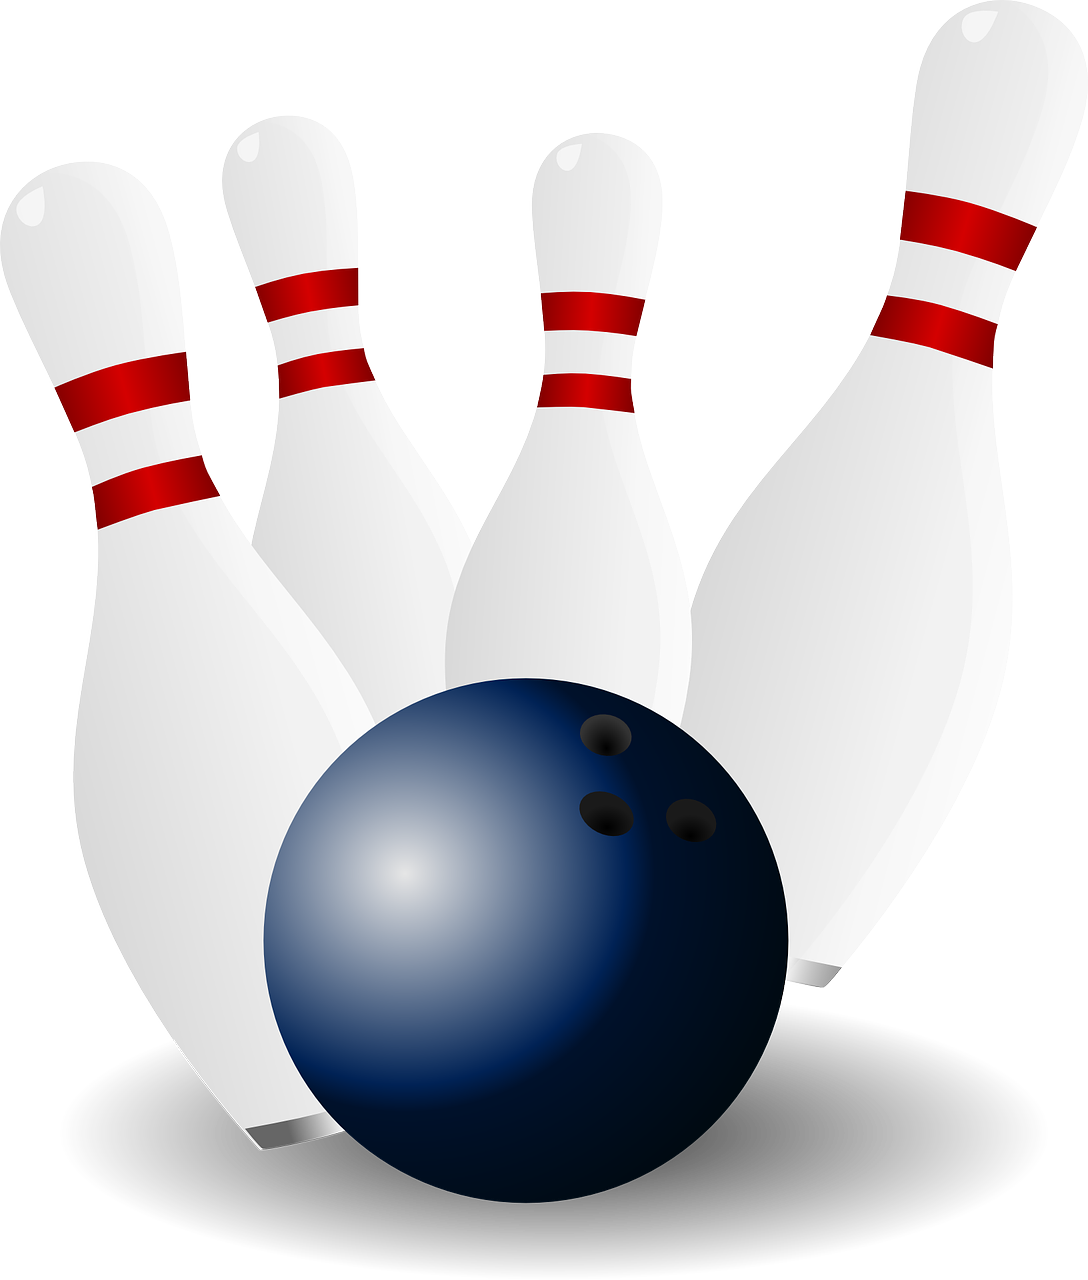 bowling skittles ninepins free photo